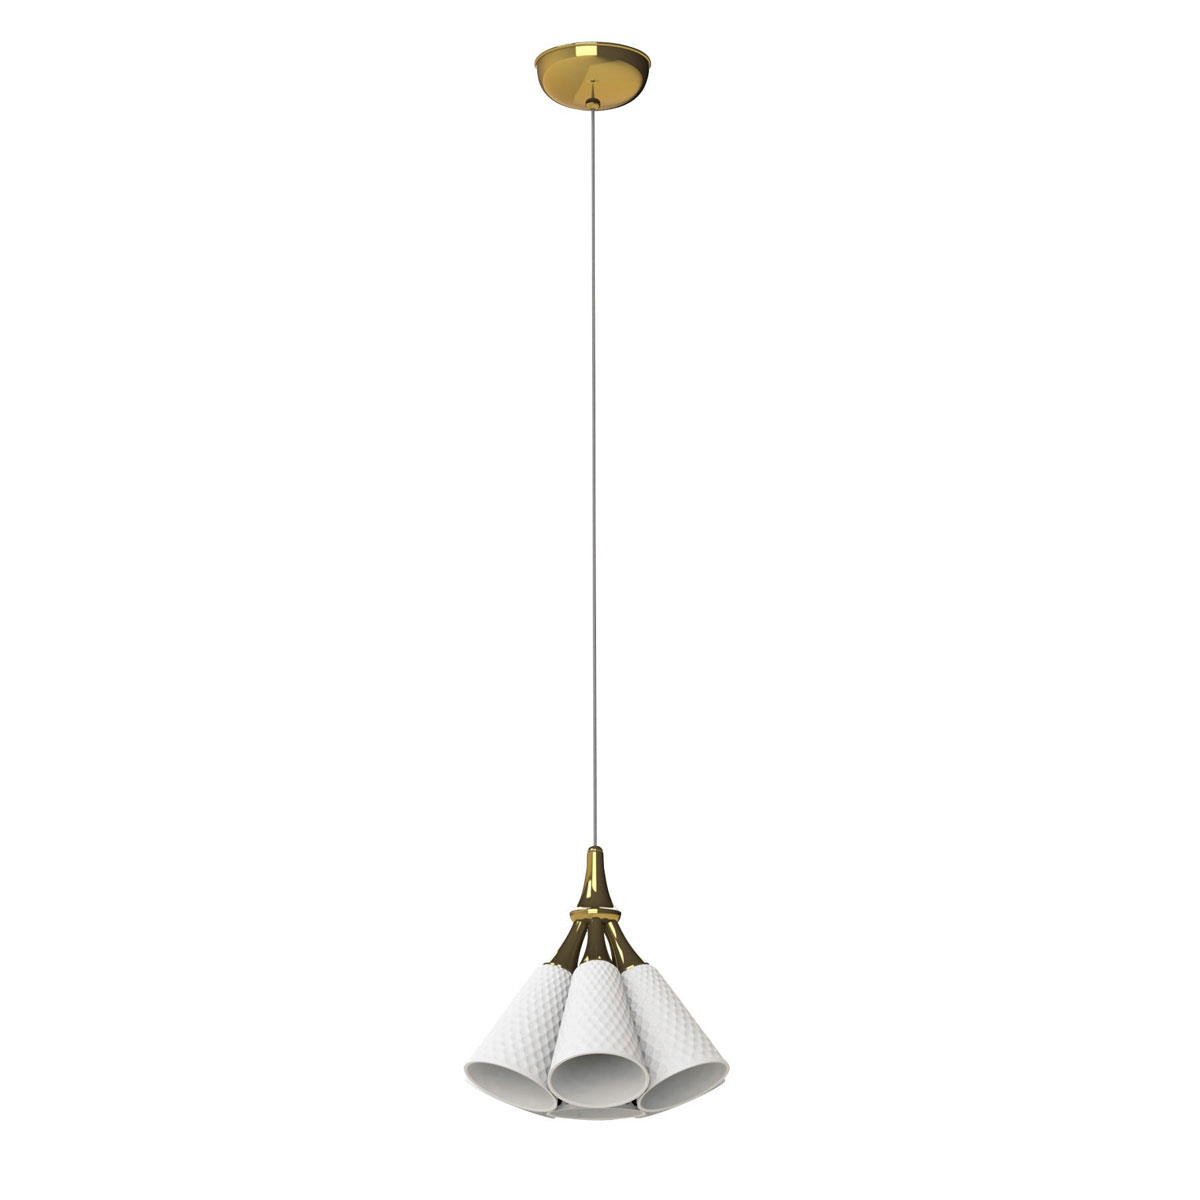 Lladro Modern Lighting, Jamz Hanging Lamp. Gold